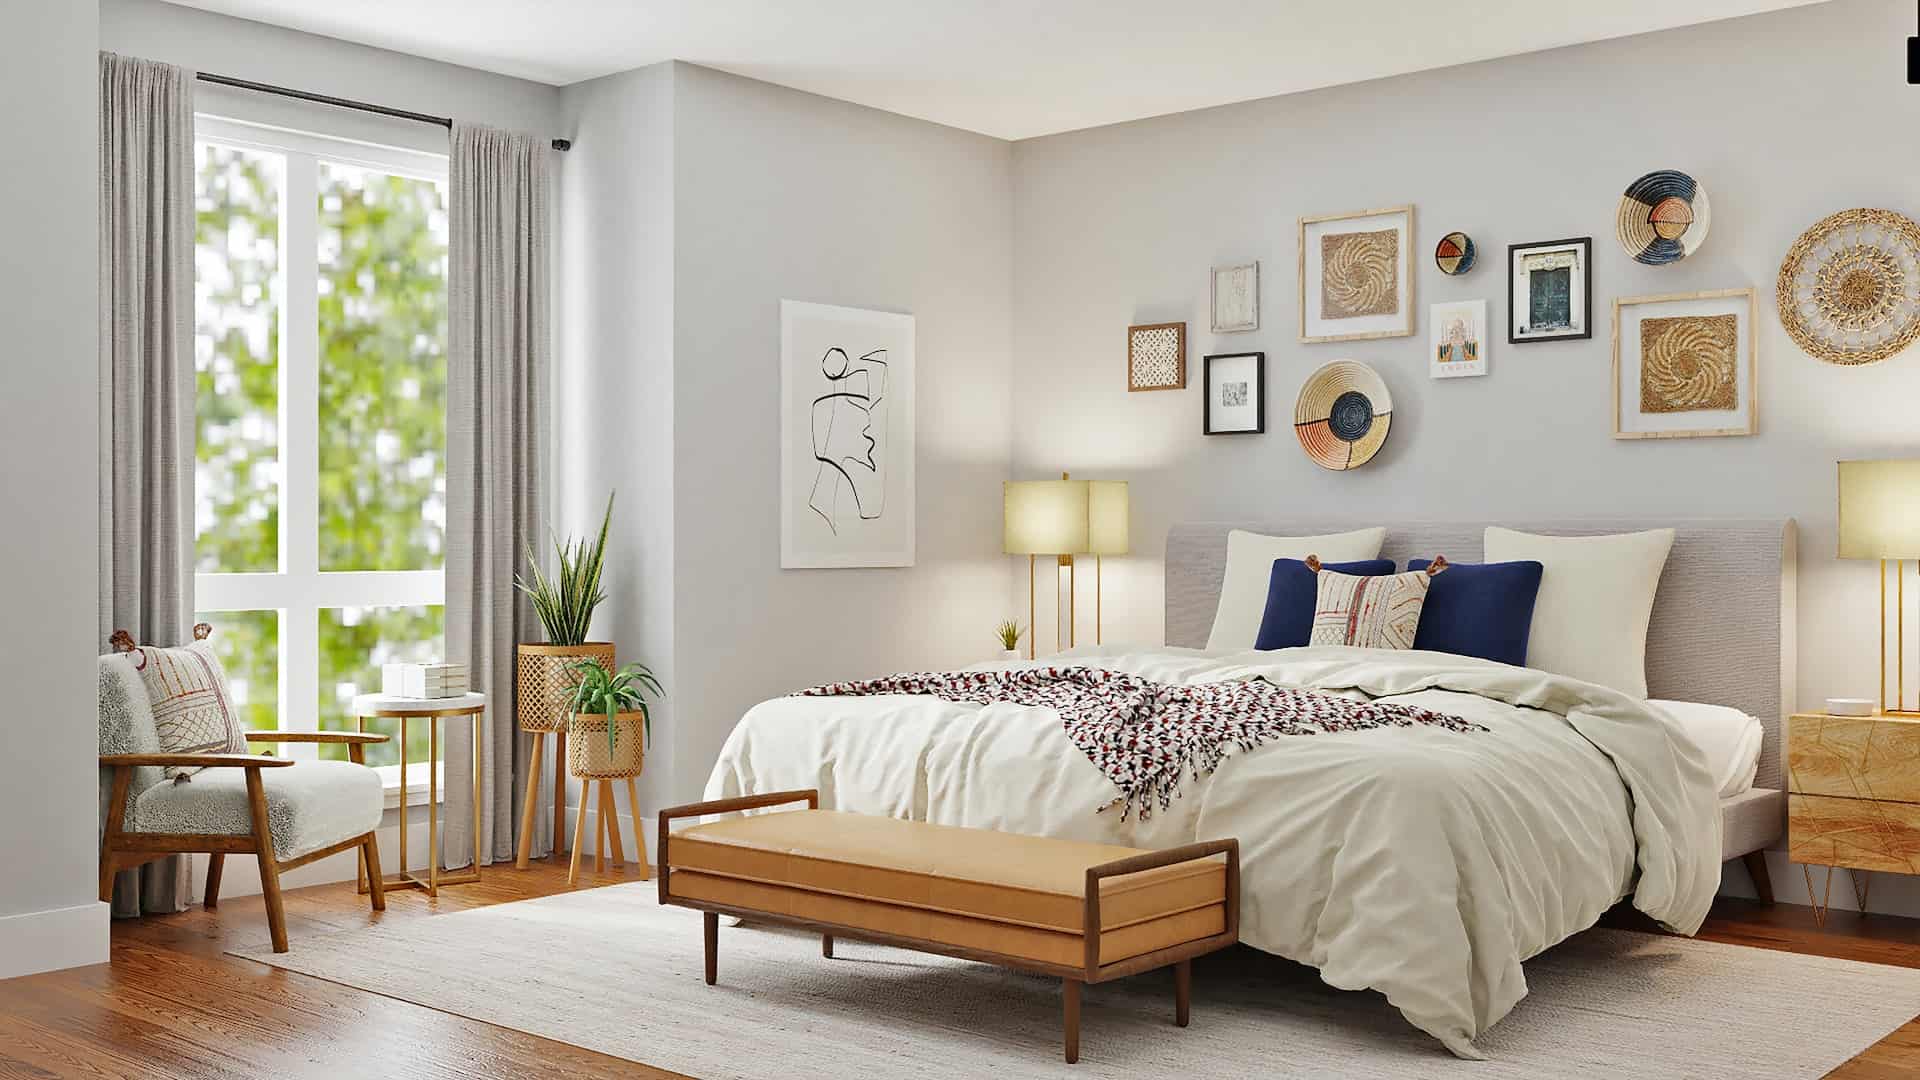 Mała sypialnia w stylu rustykalnym – jak dobrać dekoracje?